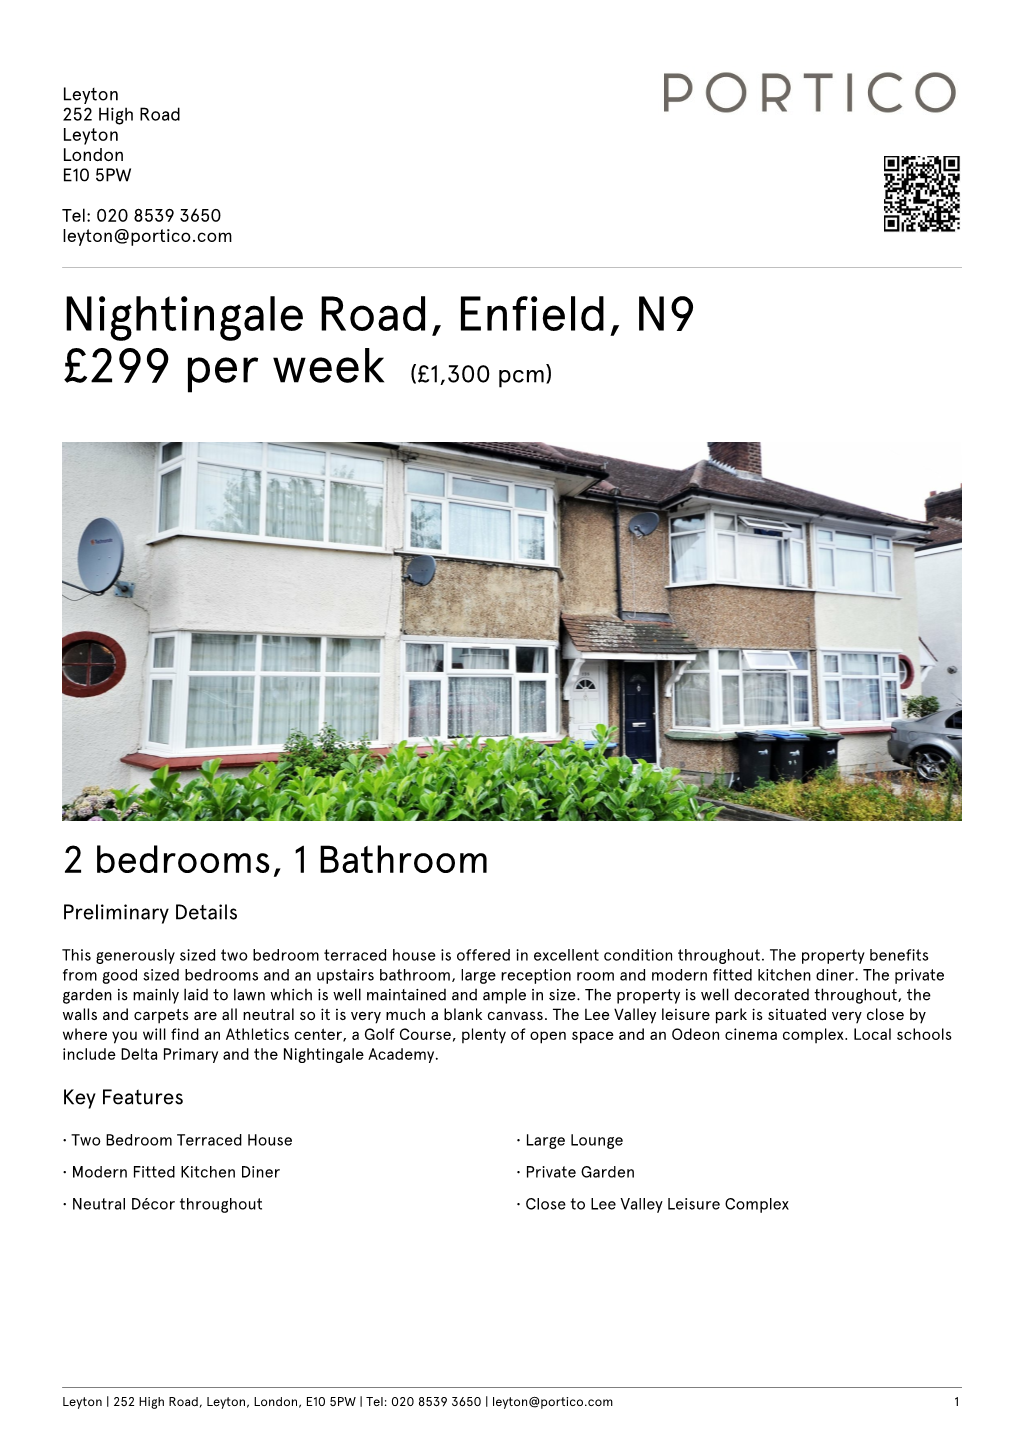 Nightingale Road, Enfield, N9 £299 Per Week